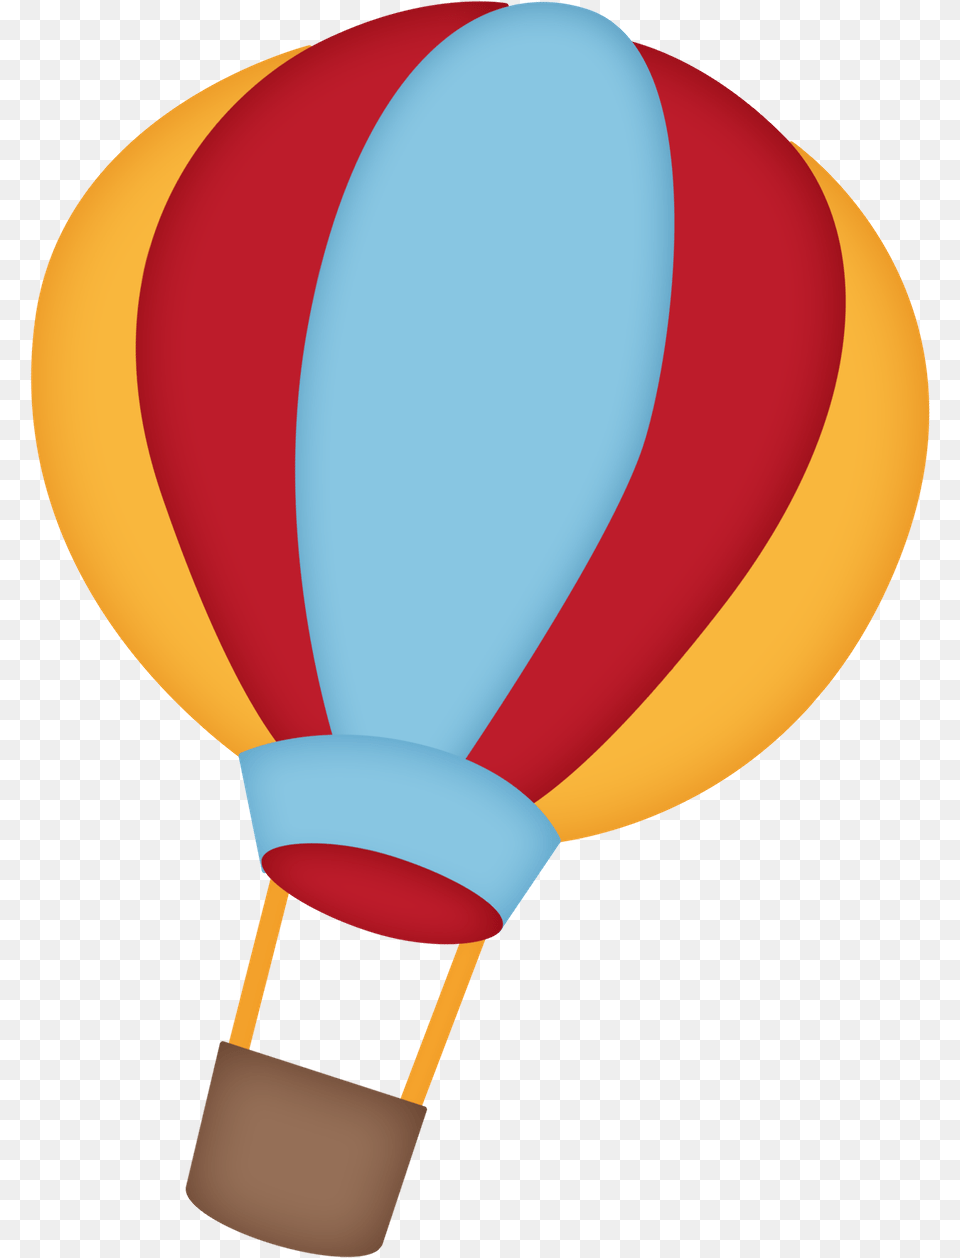 Ursinhos E Ursinhas Balo Urso Aviador, Aircraft, Hot Air Balloon, Transportation, Vehicle Free Png Download